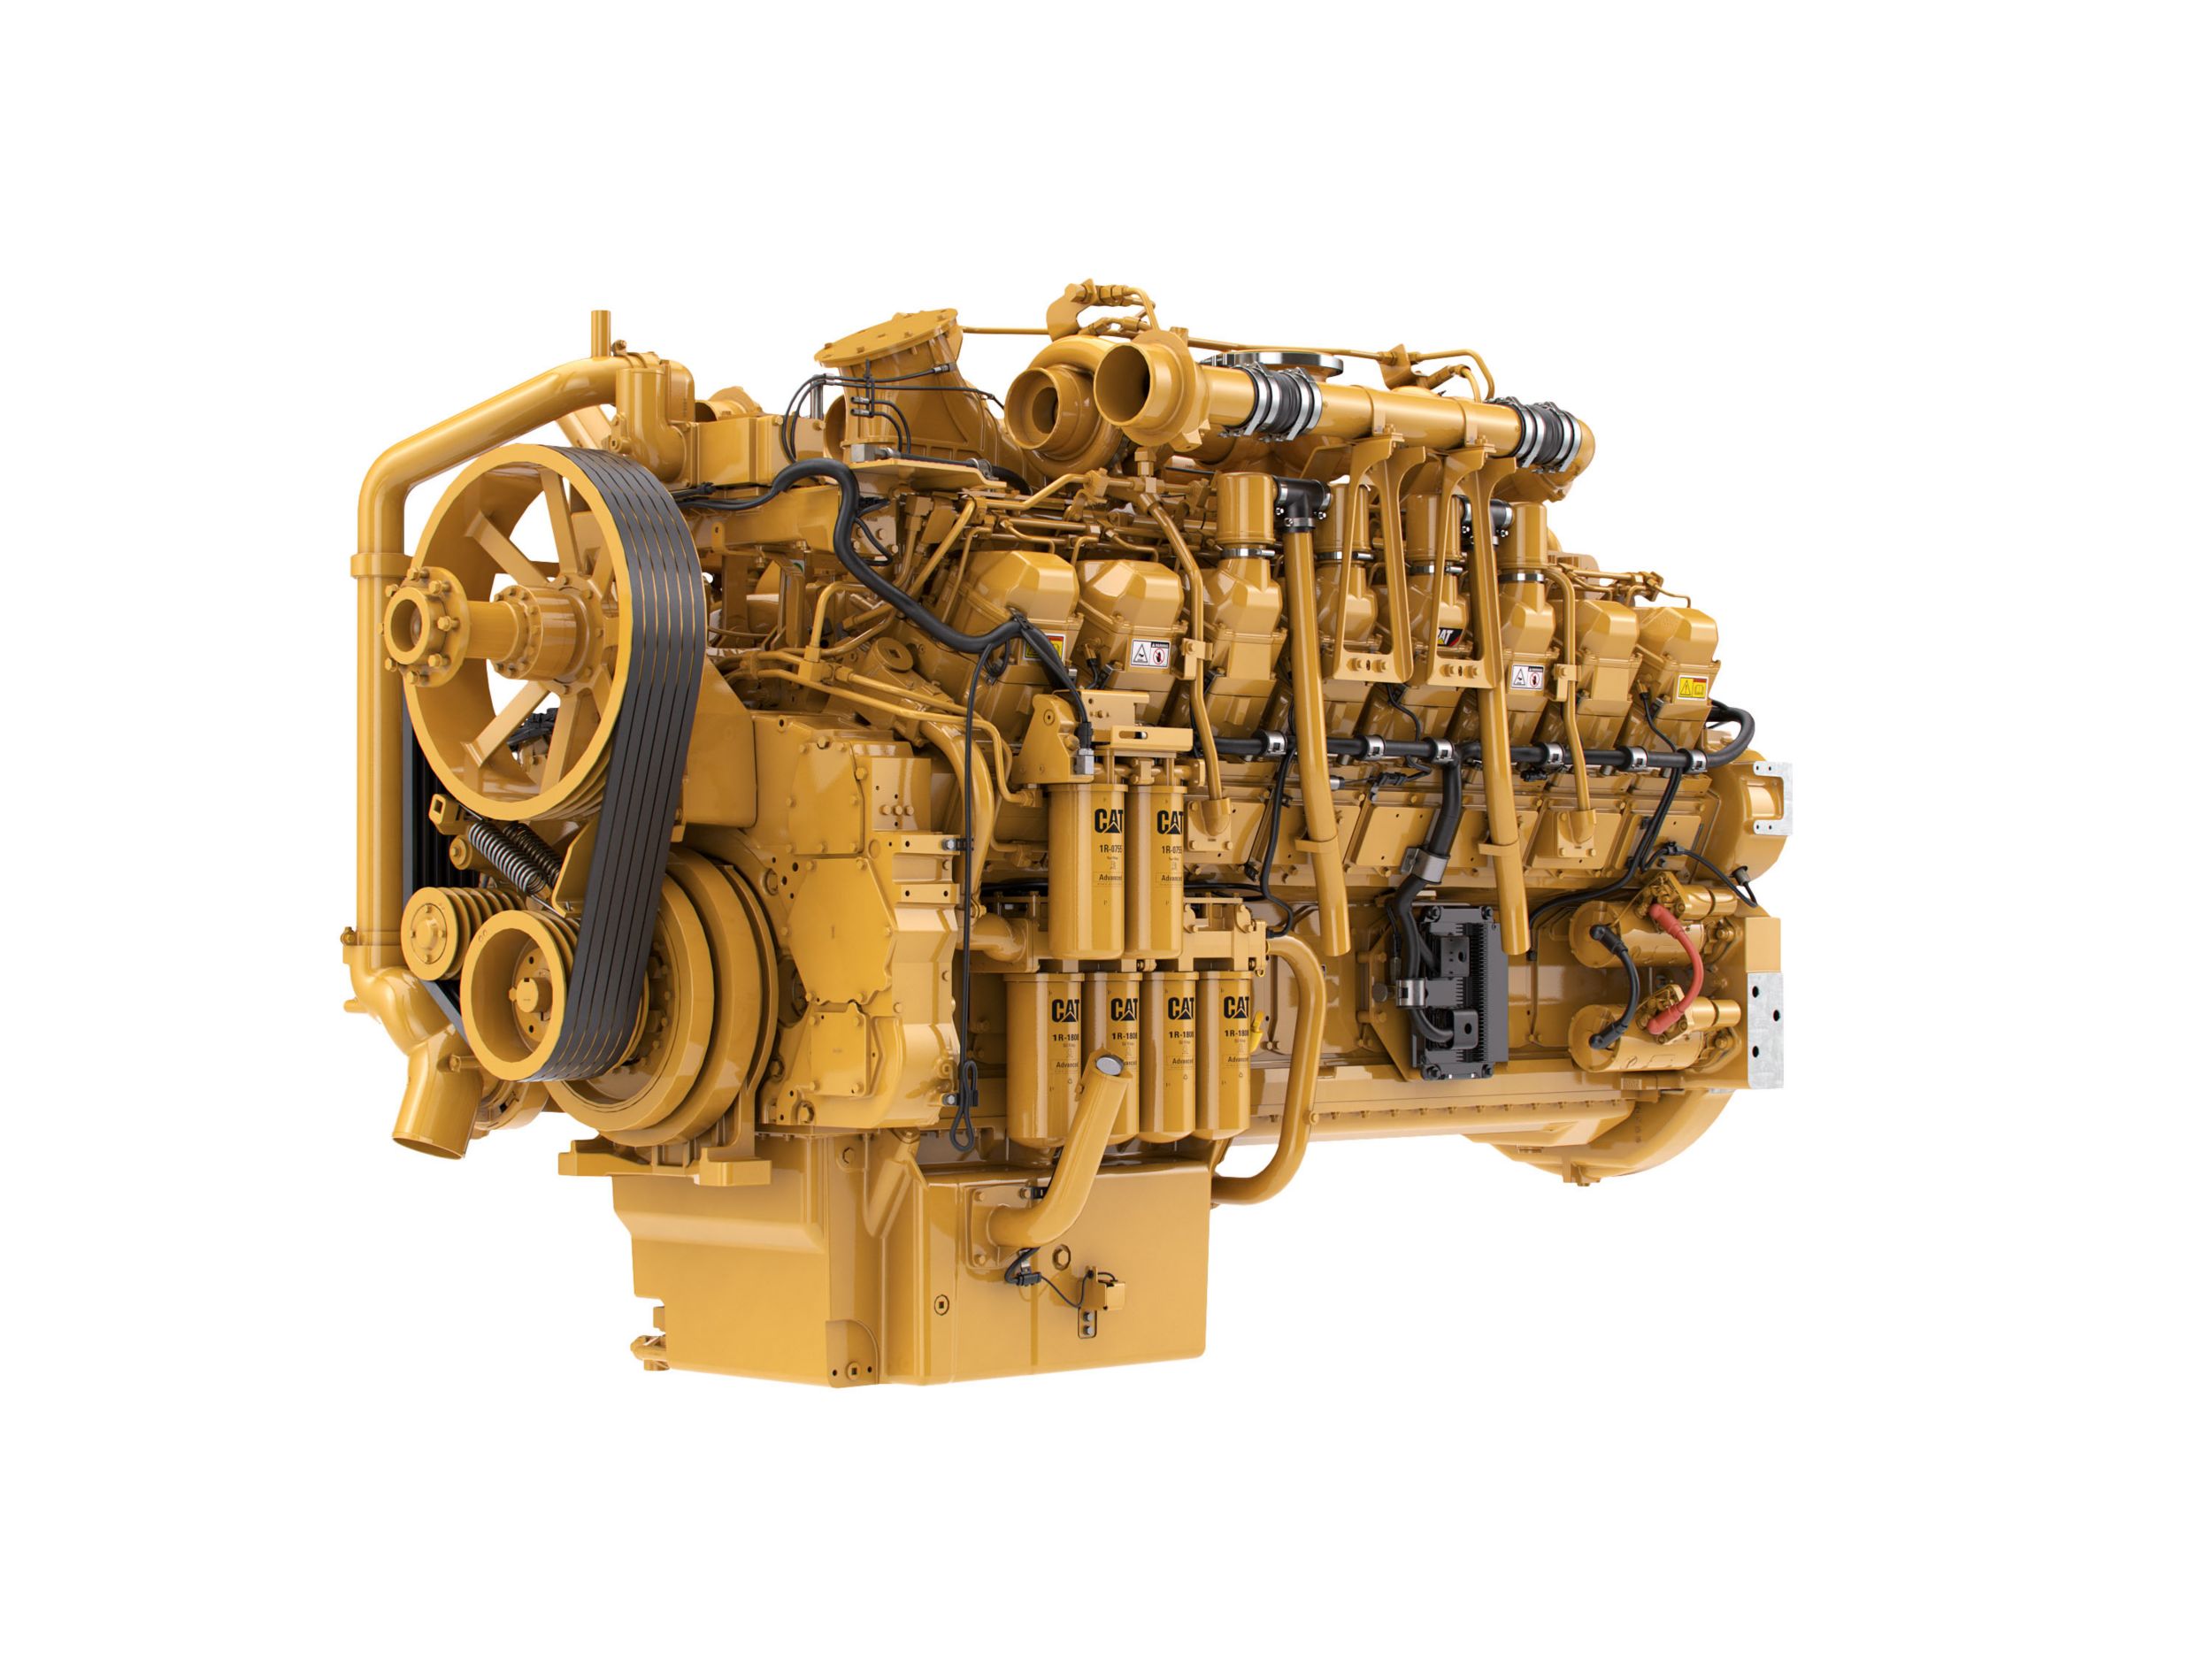 Silniki wysokoprężne 3516 LRC – rynki objęte regulacjami o niższych wymaganiach i bez obowiązujących regulacji